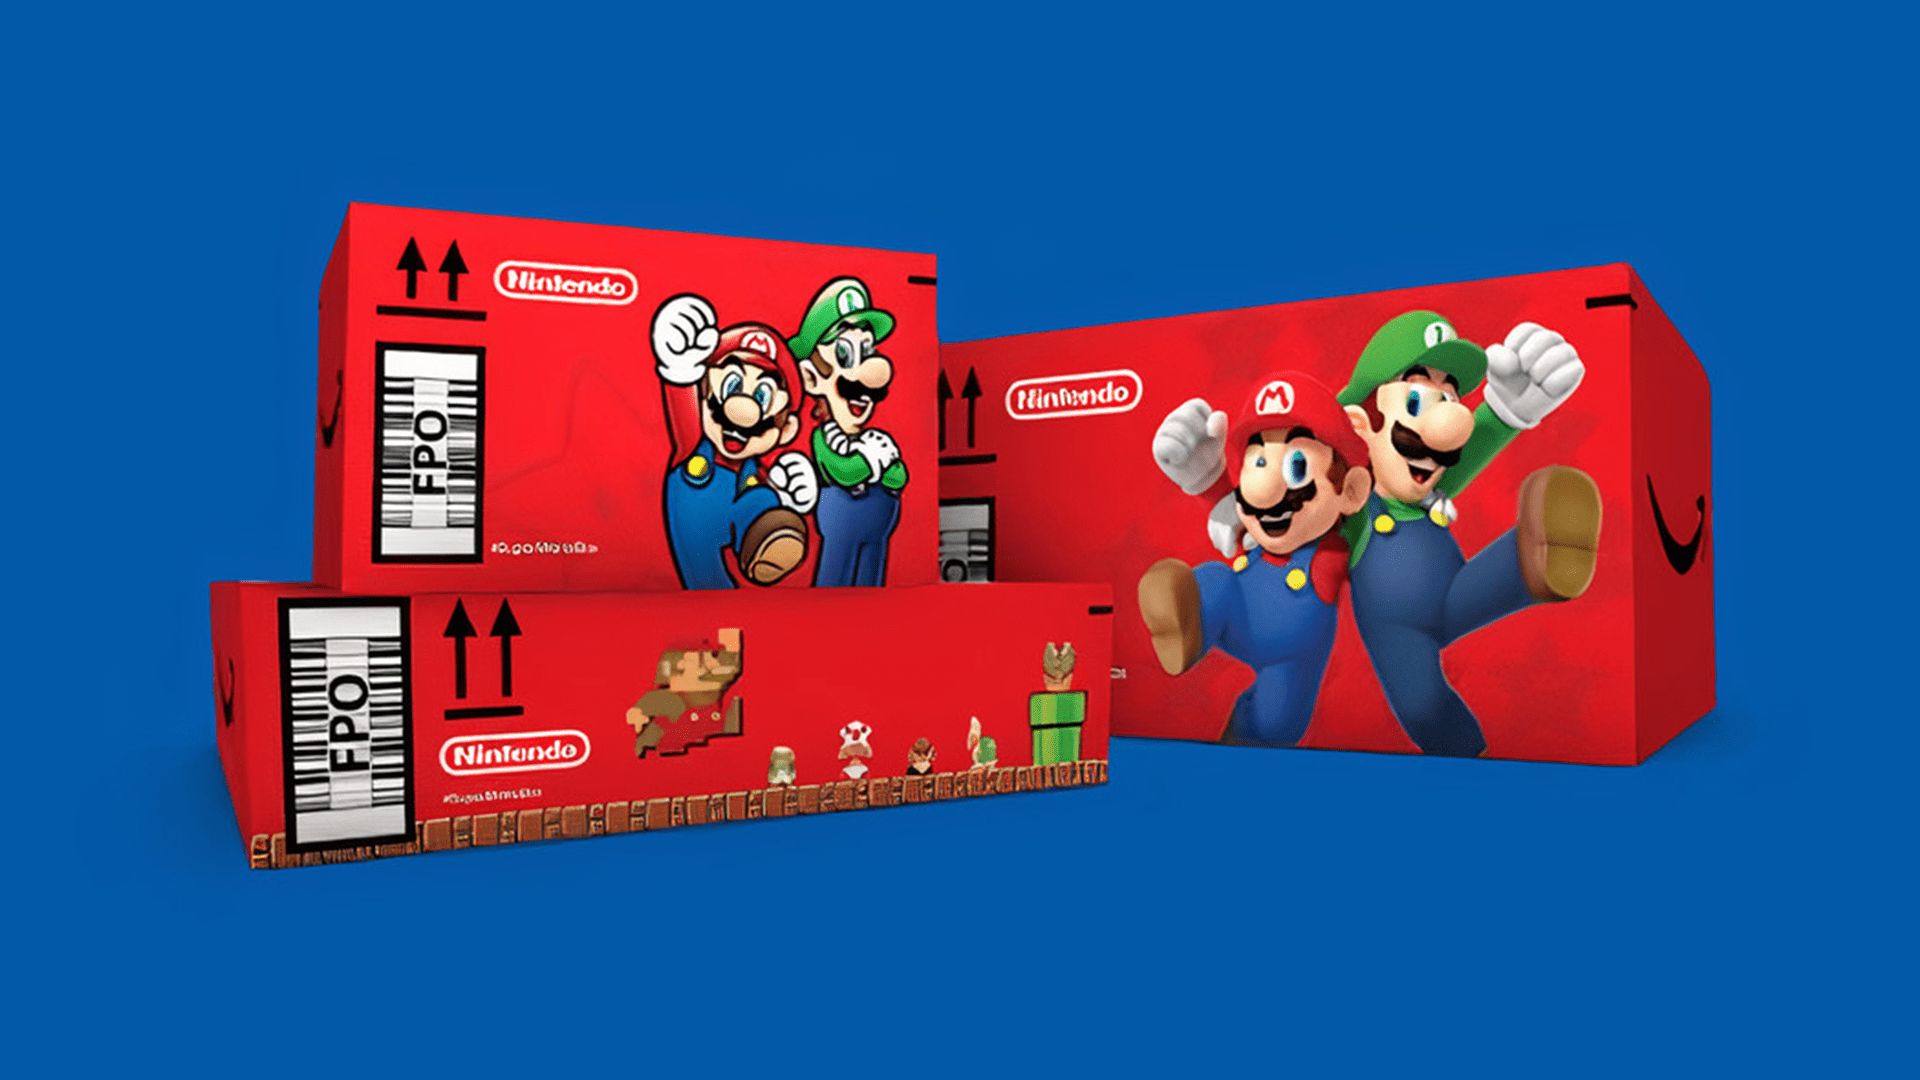 Kamu selanjutnya Amazon Pre-order dimungkinkan dalam kotak ‘Super Mario’ edisi terbatas